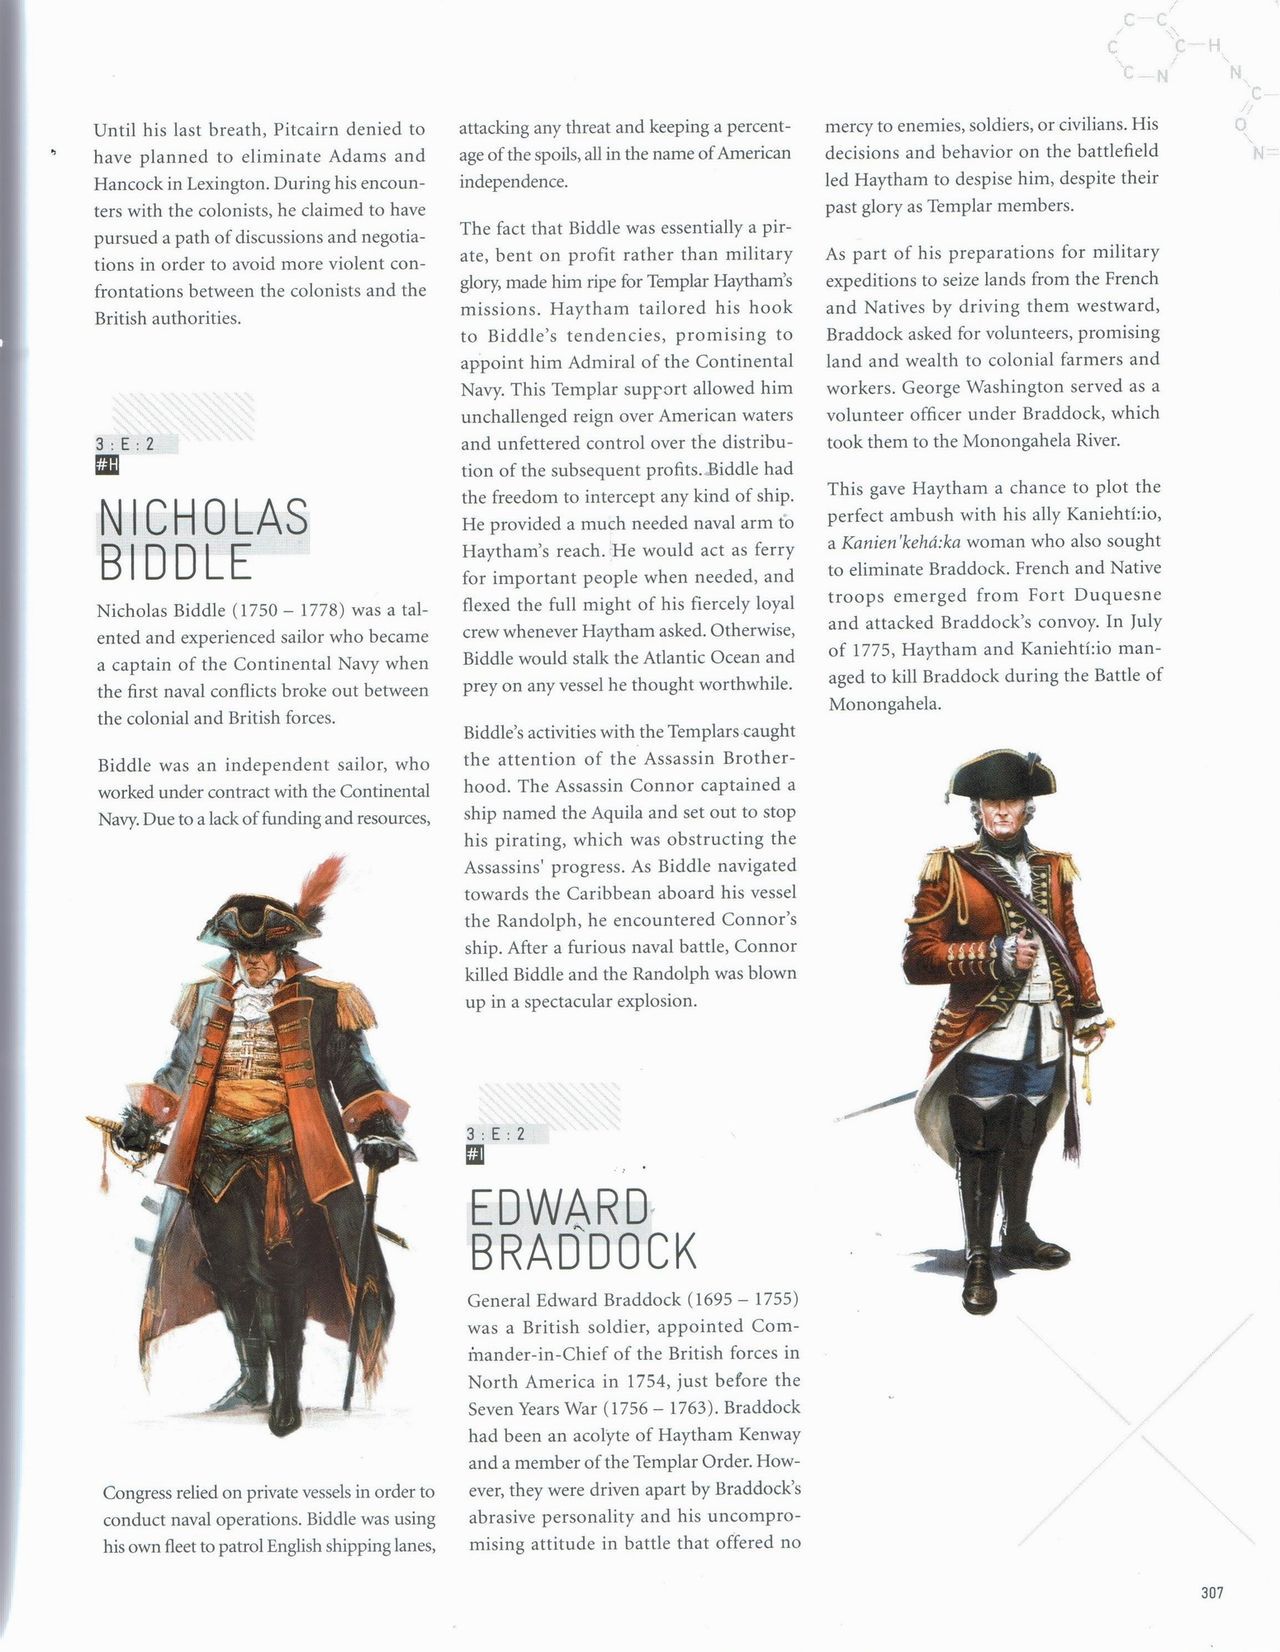 Assassin's Creed Encyclopedia 2.0 308